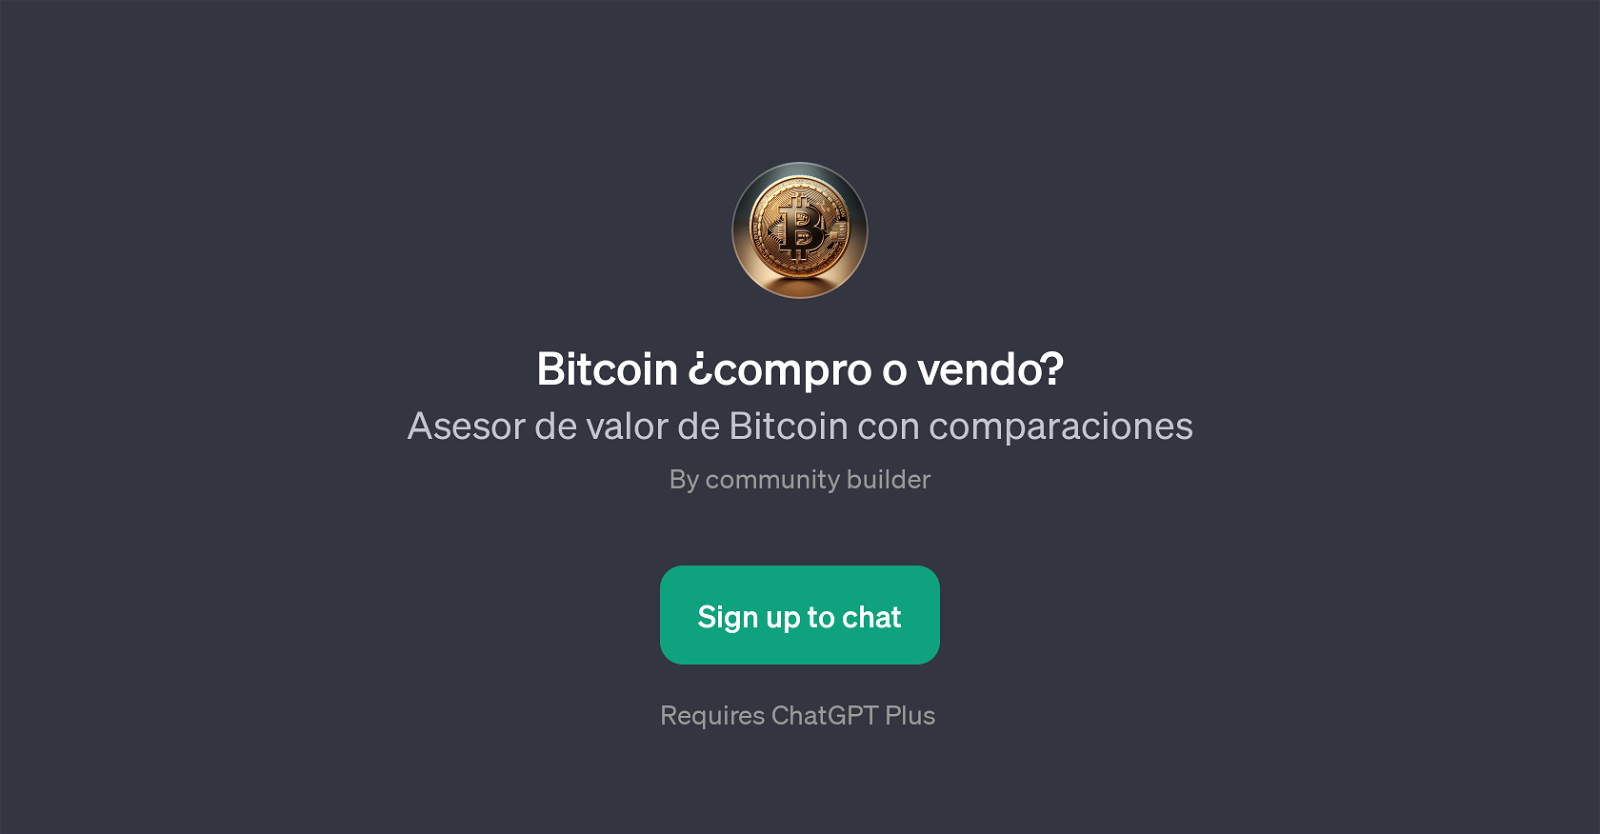 Bitcoin compro o vendo? website